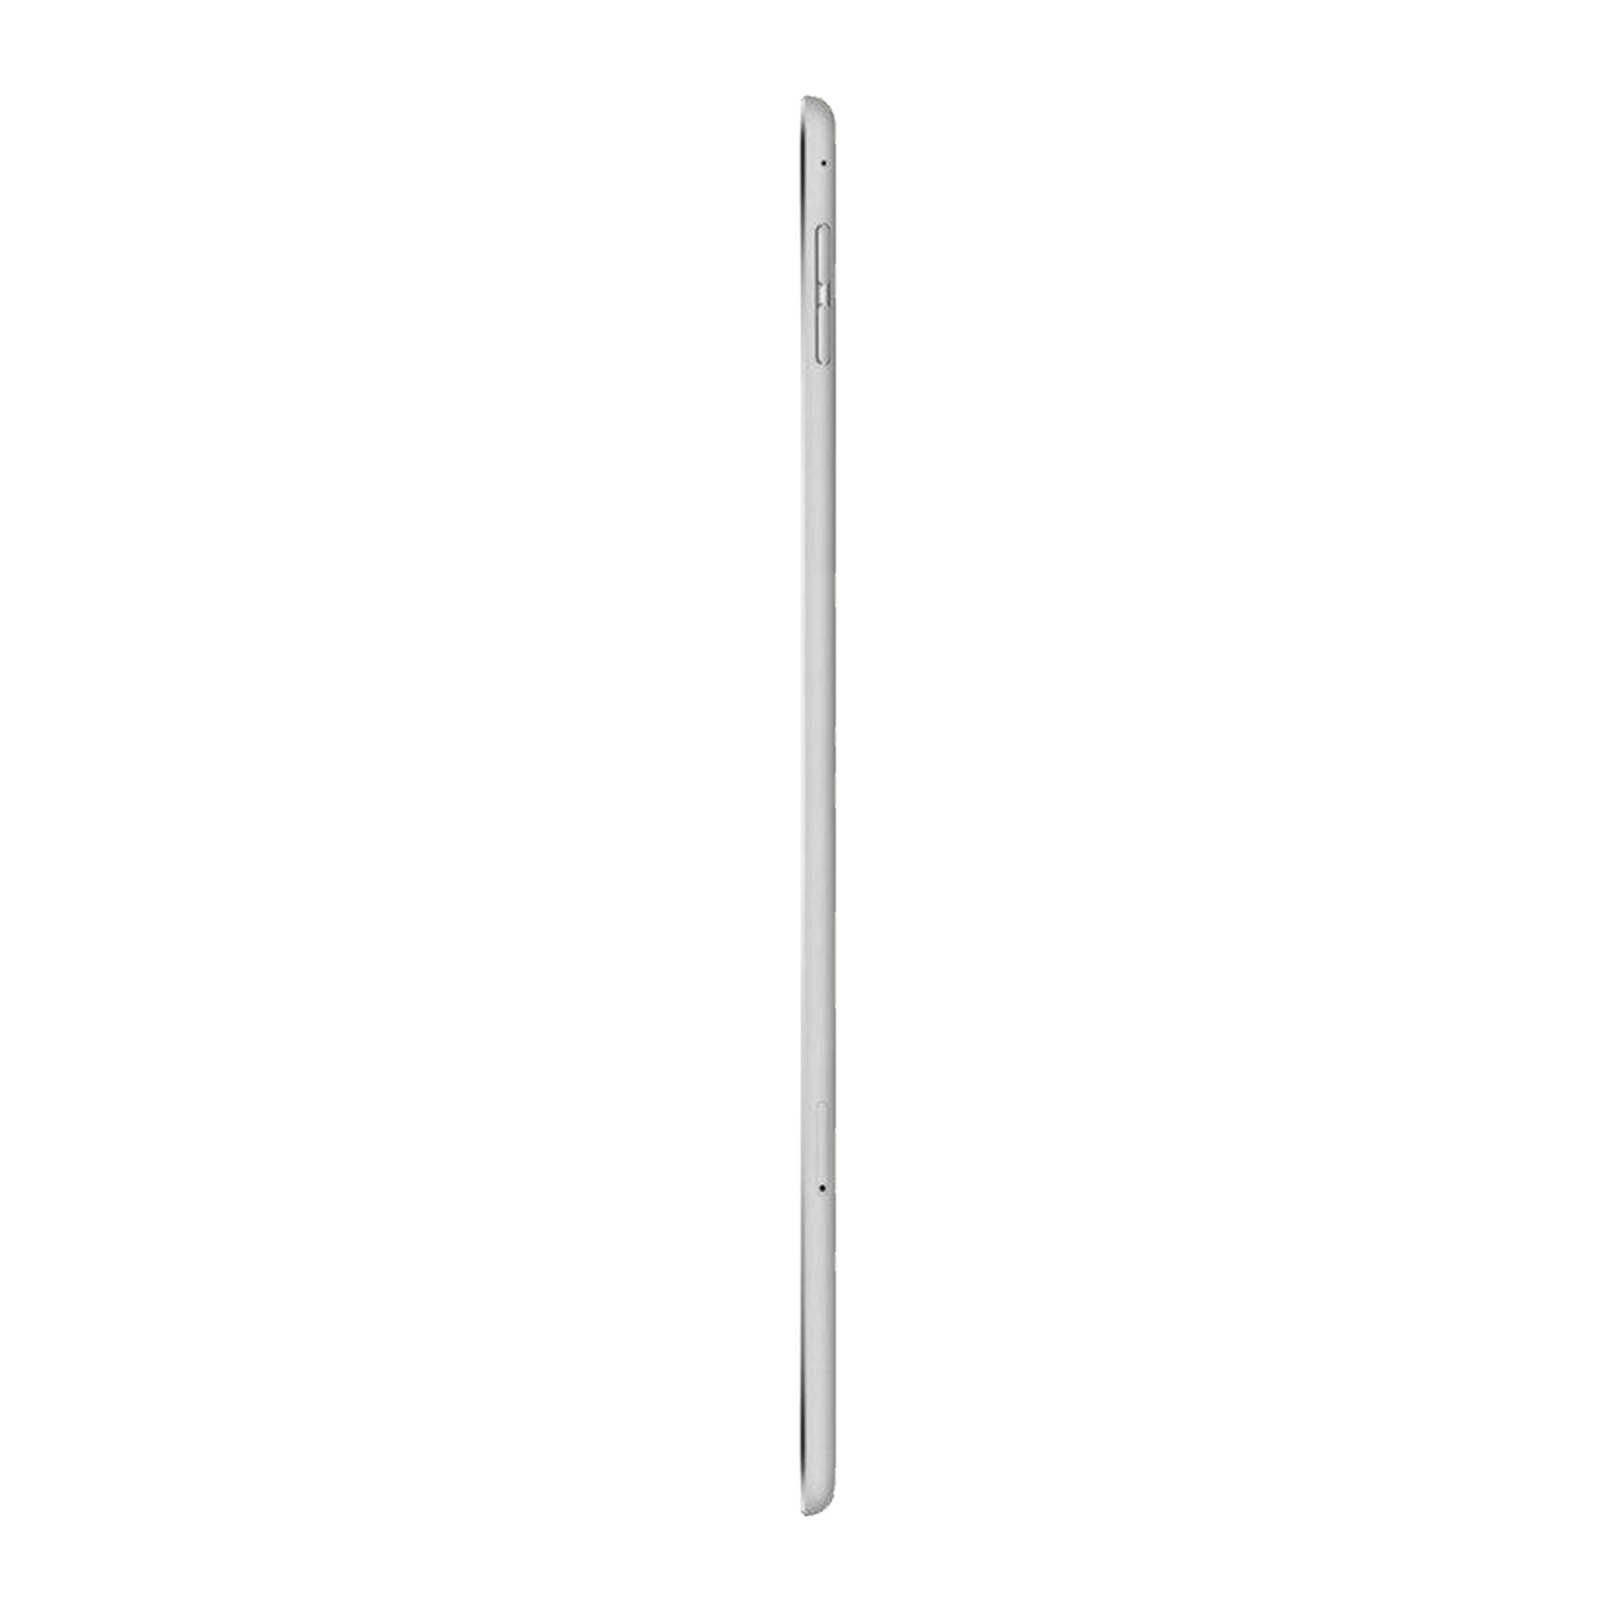 Refurbished Apple iPad Air 2 64GB WiFi Silver Good